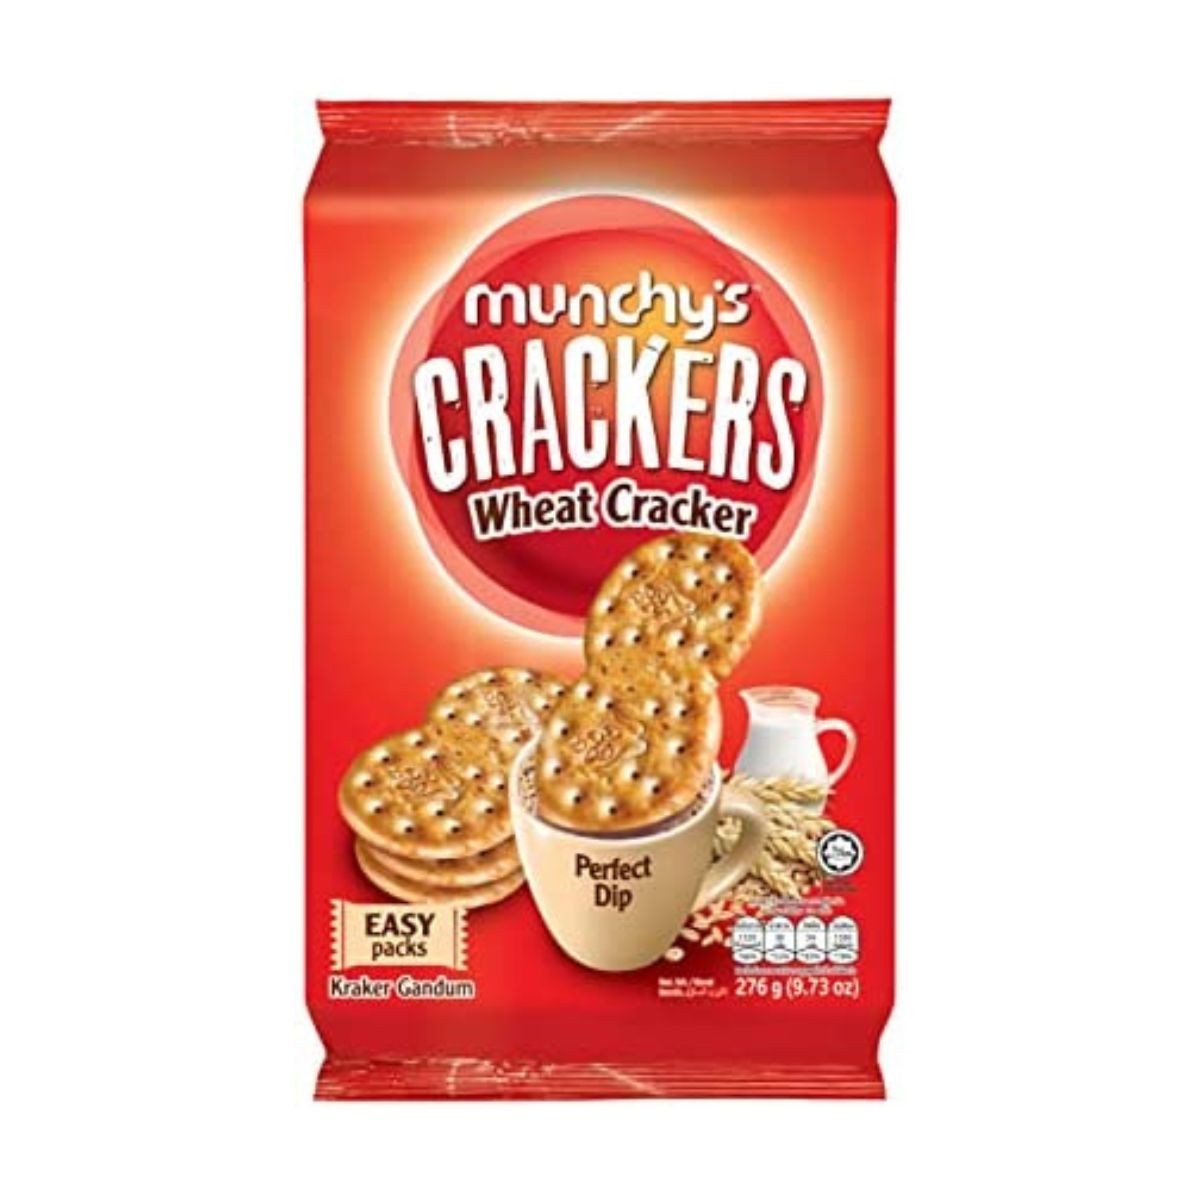 Munchy's Crackers - Wheat Cracker - 276g